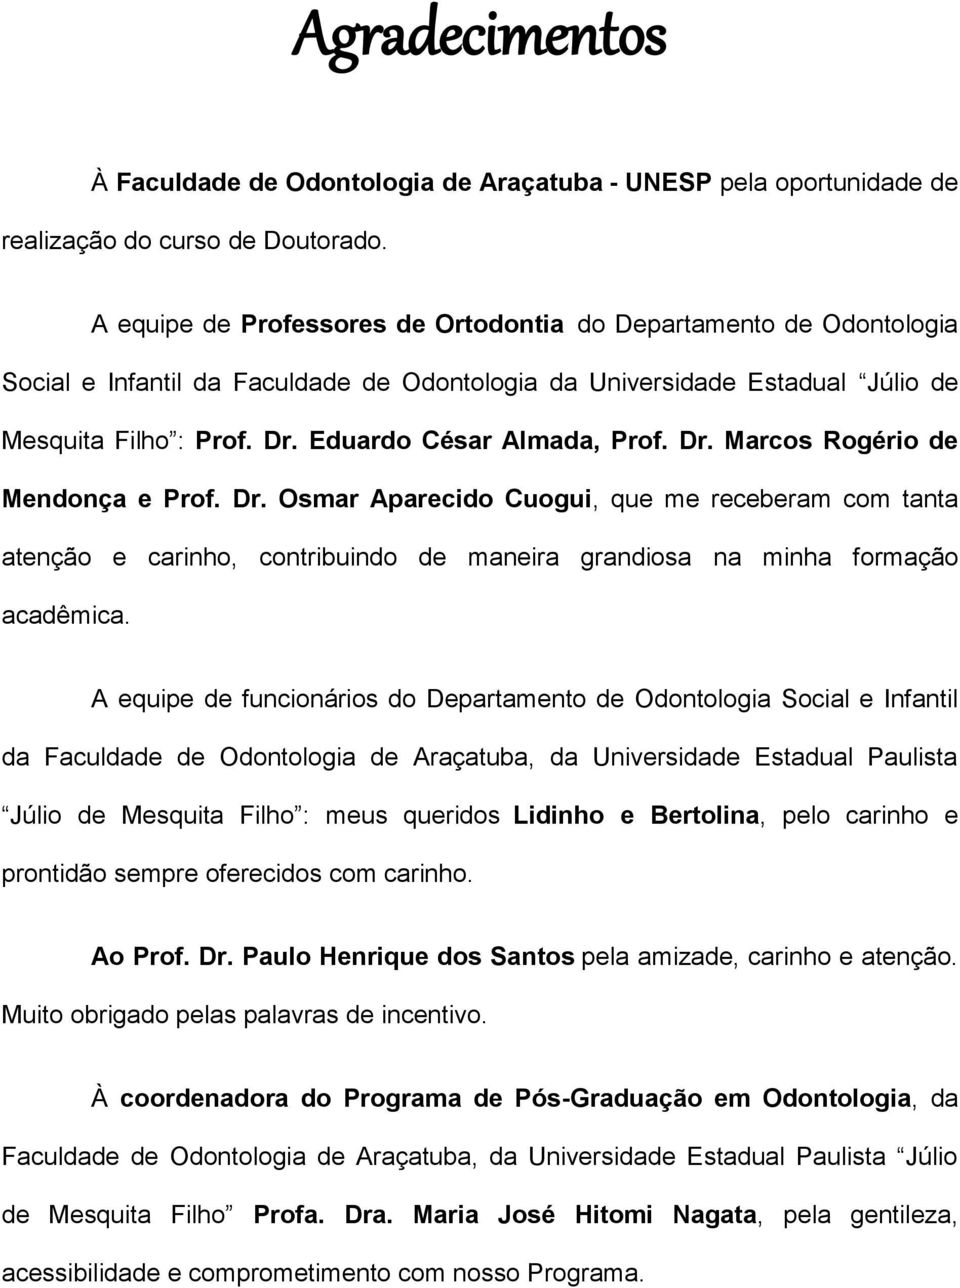 Eduardo César Almada, Prof. Dr. Marcos Rogério de Mendonça e Prof. Dr. Osmar Aparecido Cuogui, que me receberam com tanta atenção e carinho, contribuindo de maneira grandiosa na minha formação acadêmica.